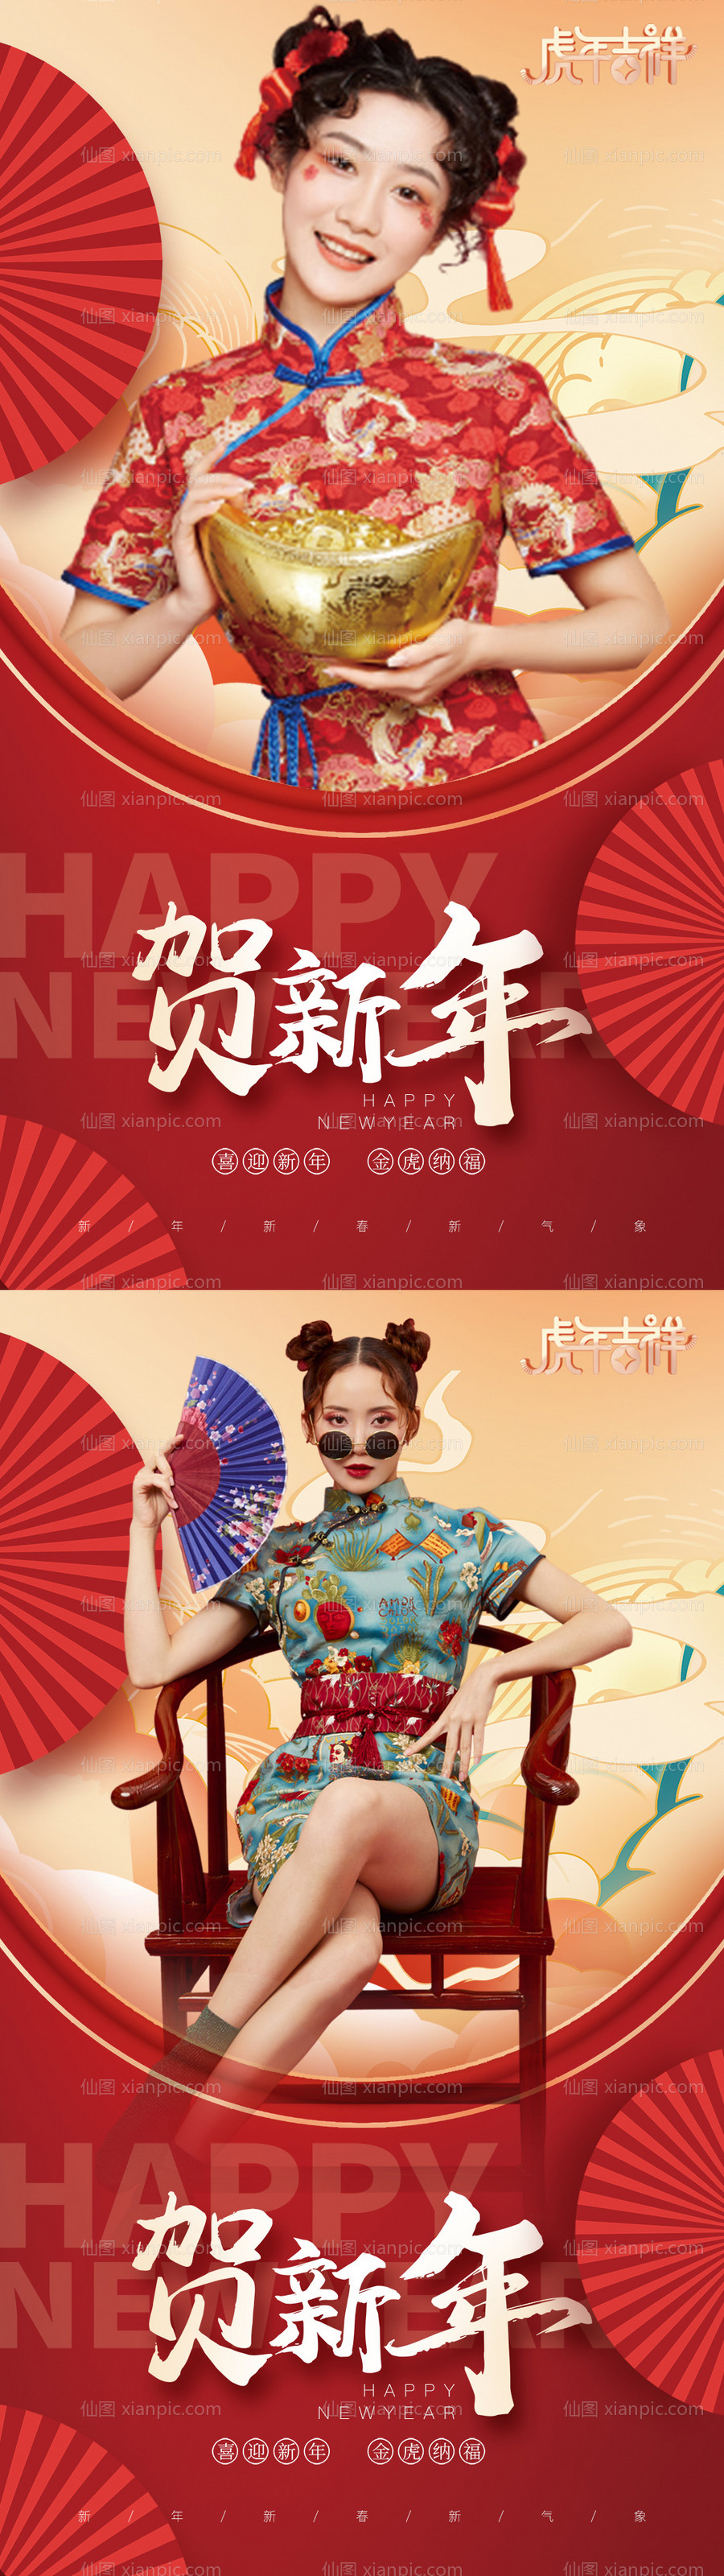 素材乐-春节除夕新年促销医美系列海报